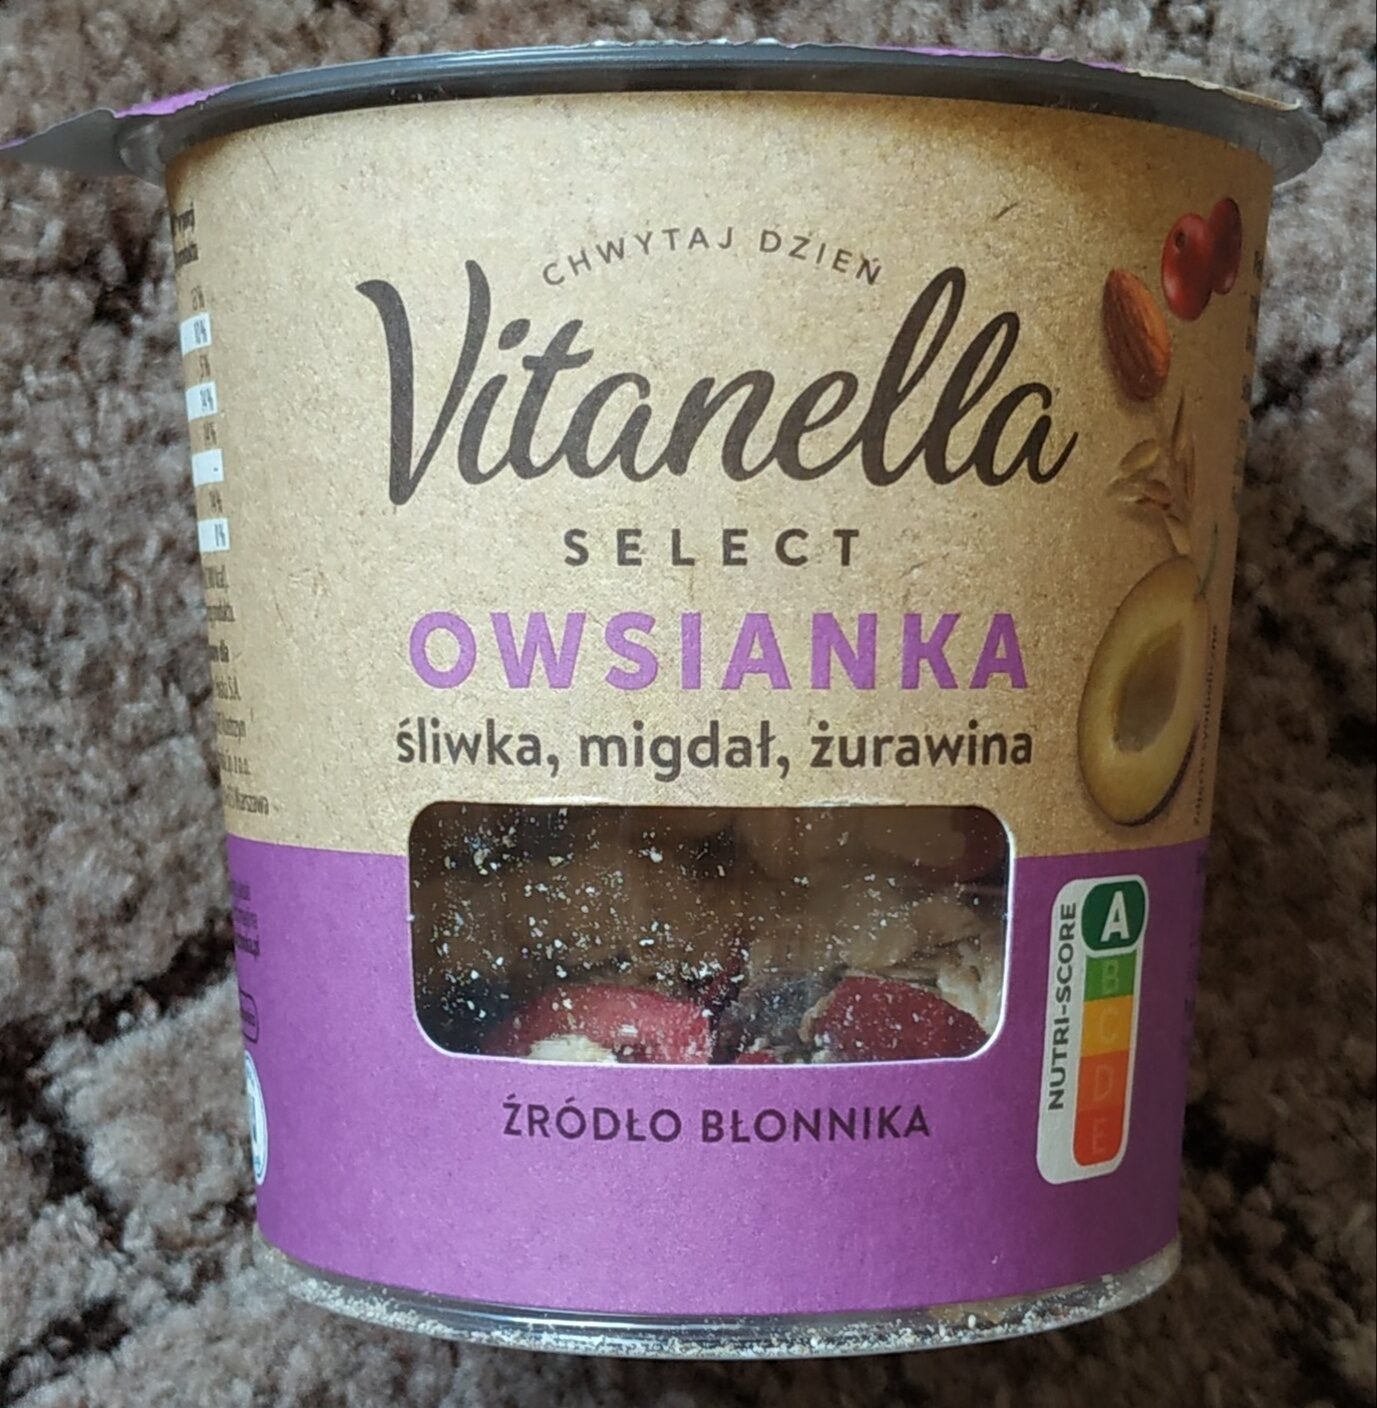 Vitanella Owsianka - śliwka, migdał, żurawina - Produkt